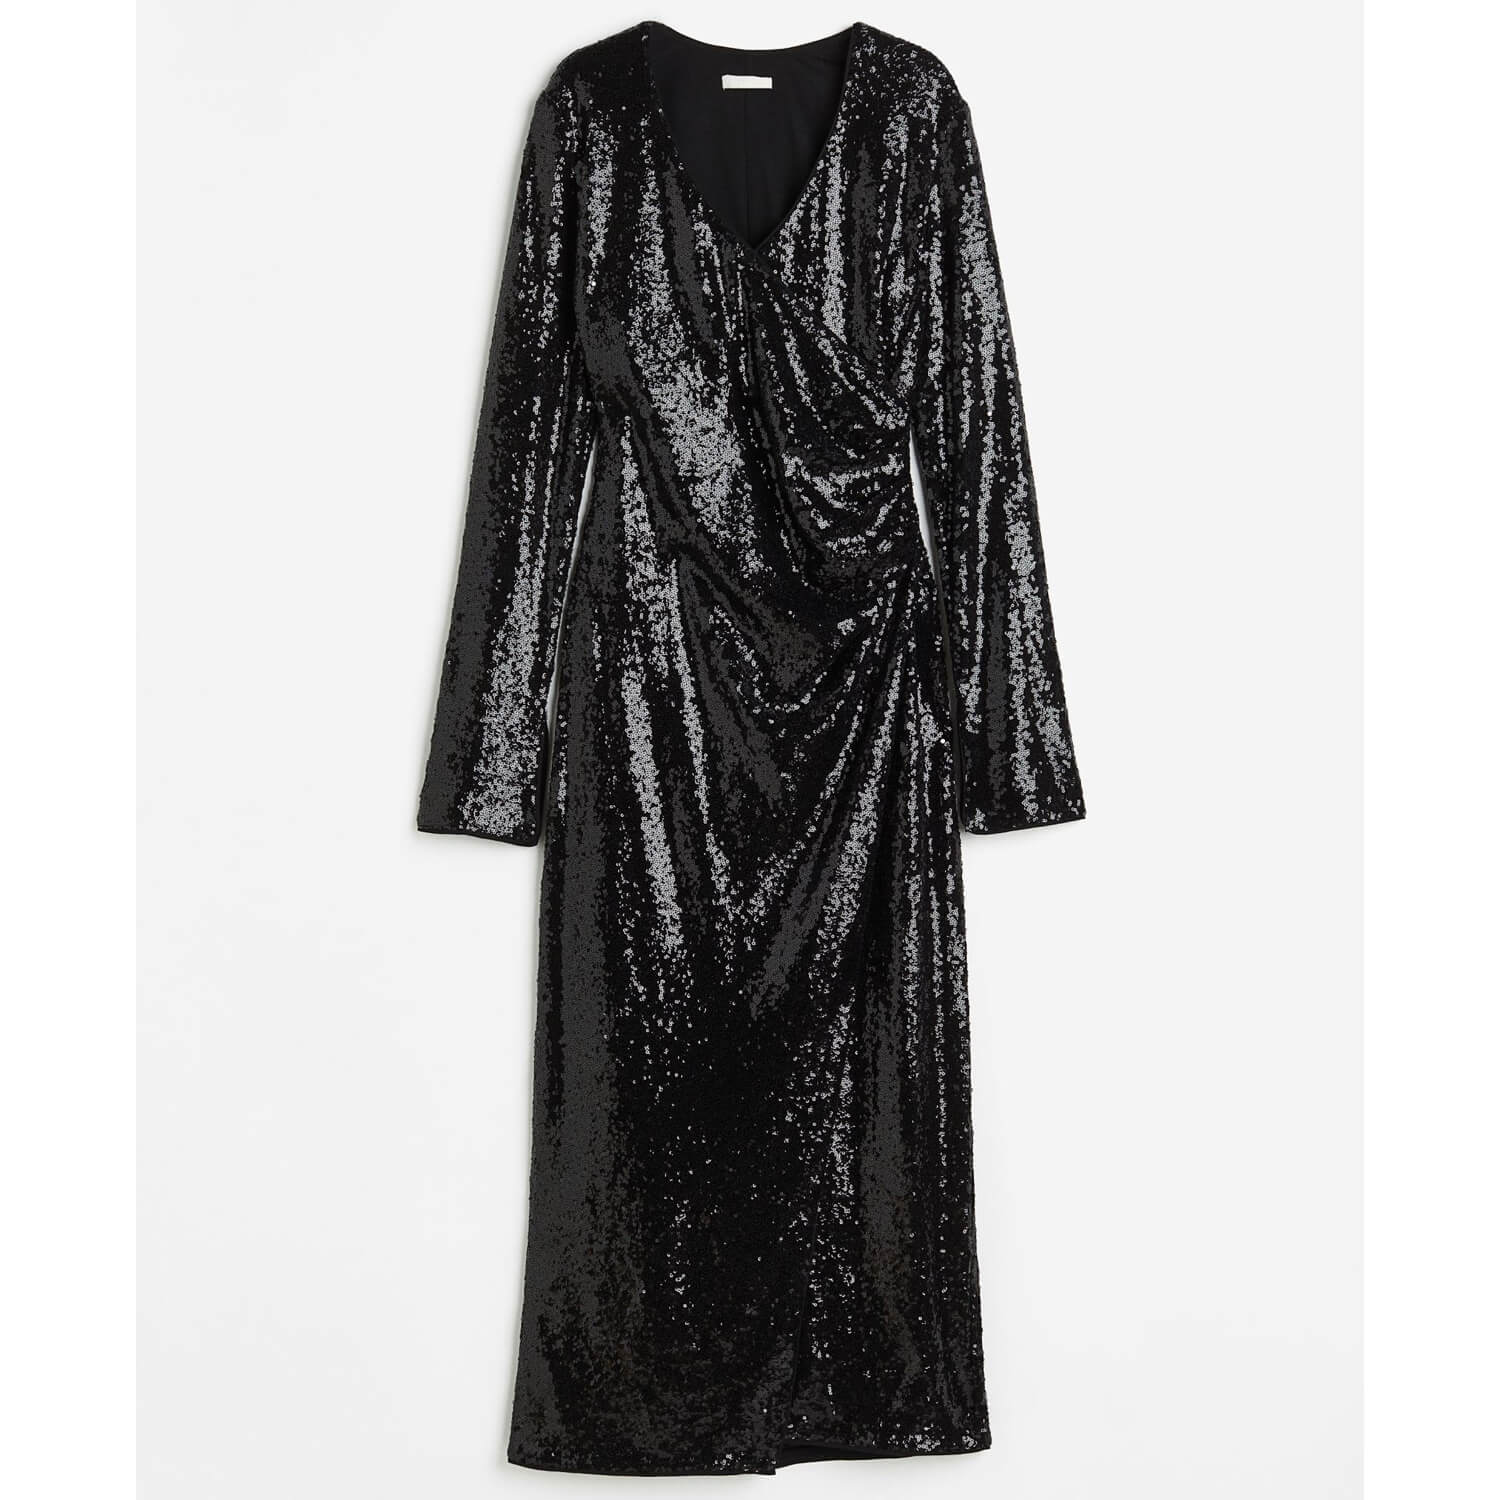 Платье H&M Sequined, черный платье длинное v образный вырез длинные рукава 46 серебристый